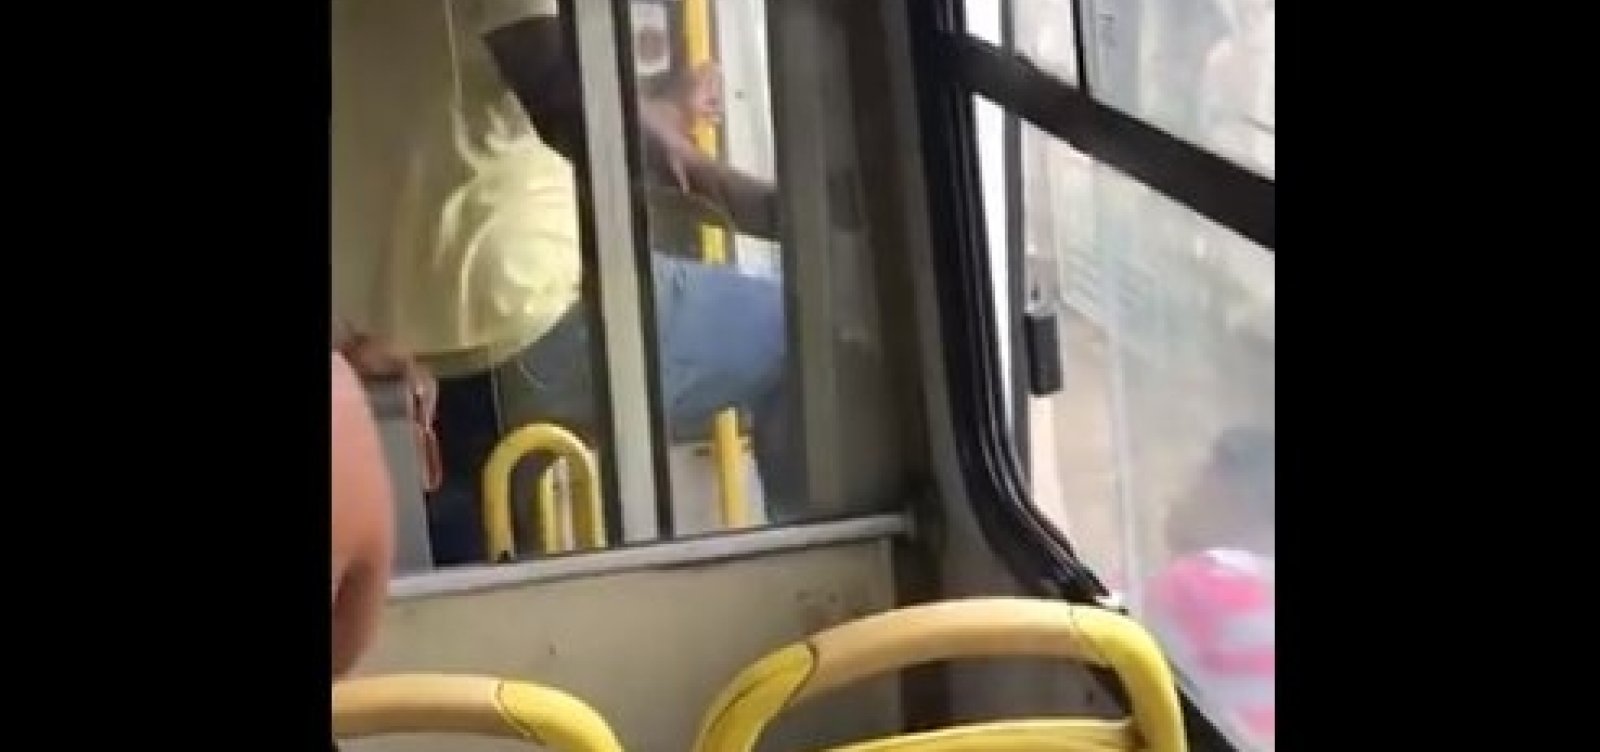 Com chutes e pontapés, mulher é expulsa de ônibus por não usar máscara; veja vídeo  